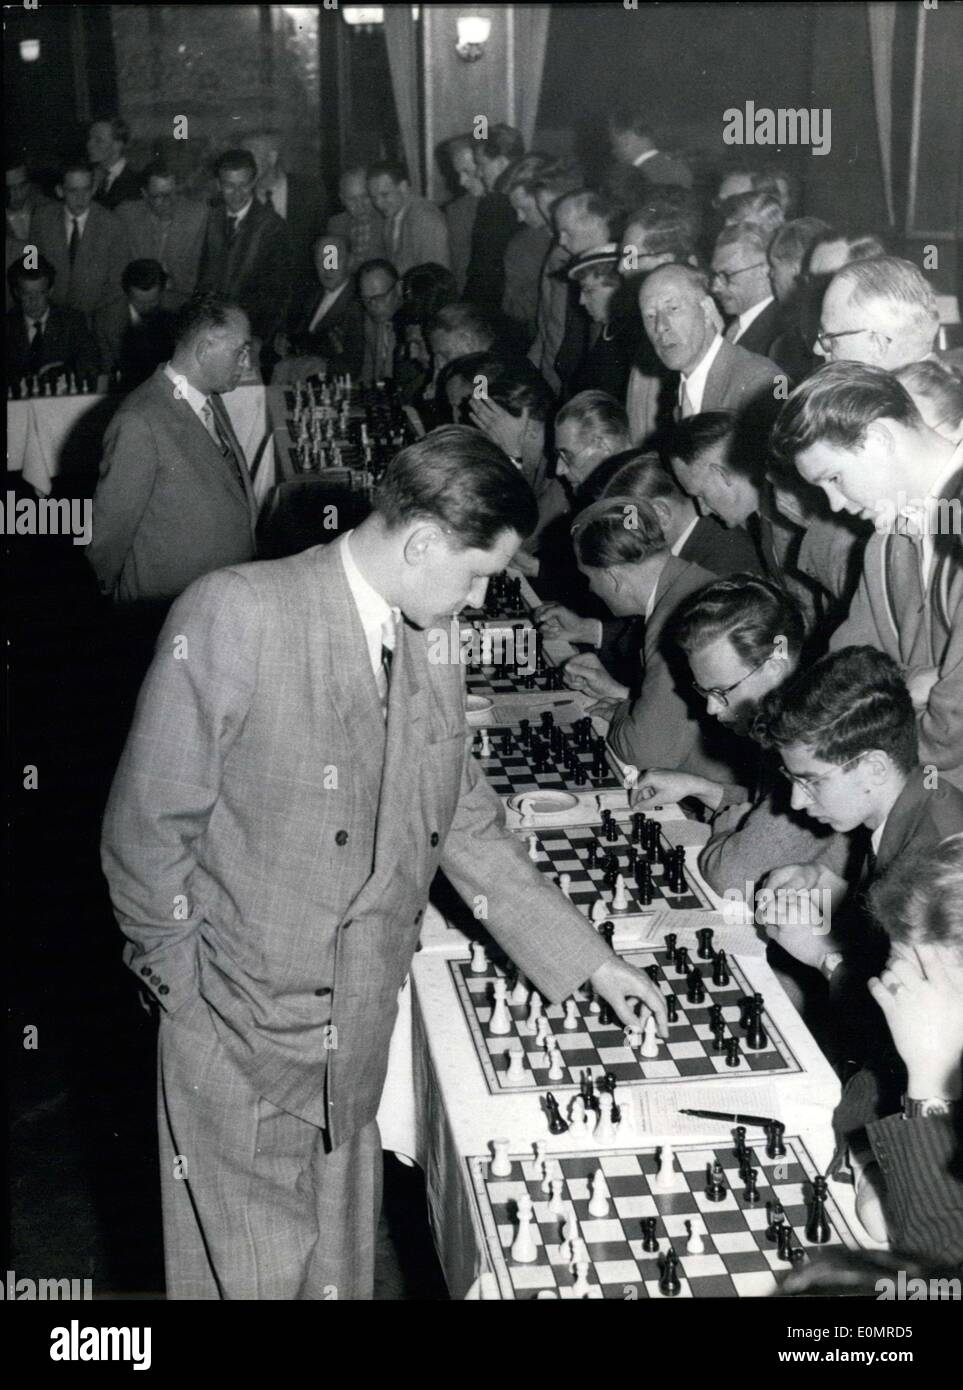 Paul Keres V: The 1948 World Championship